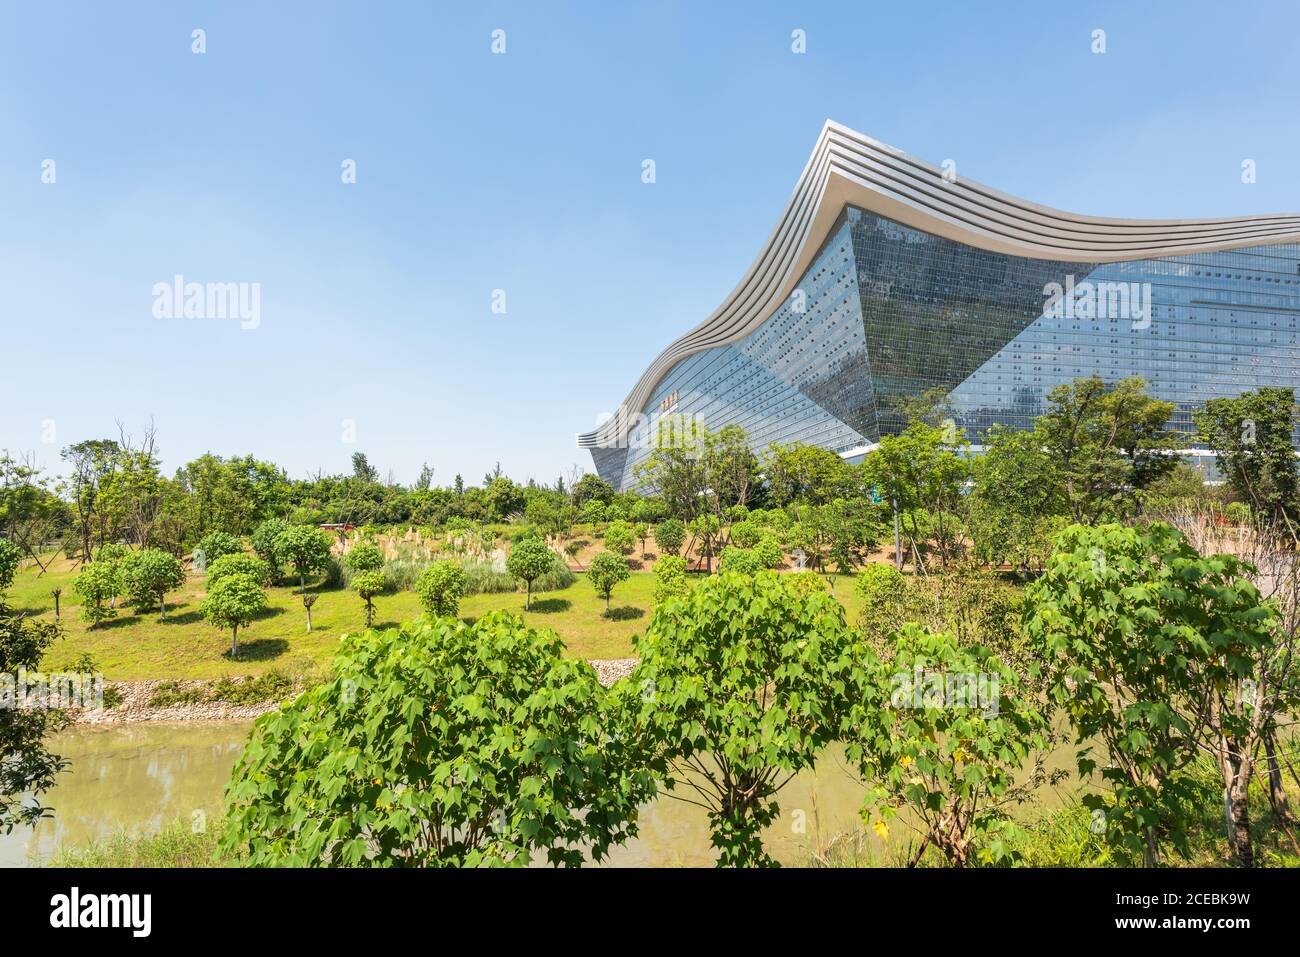 Chengdu, province du Sichuan, Chine - 26 août 2020 : vue sur le bâtiment du Centre mondial du Nouveau siècle depuis le parc Guixi par une journée ensoleillée avec un ciel bleu clair Banque D'Images